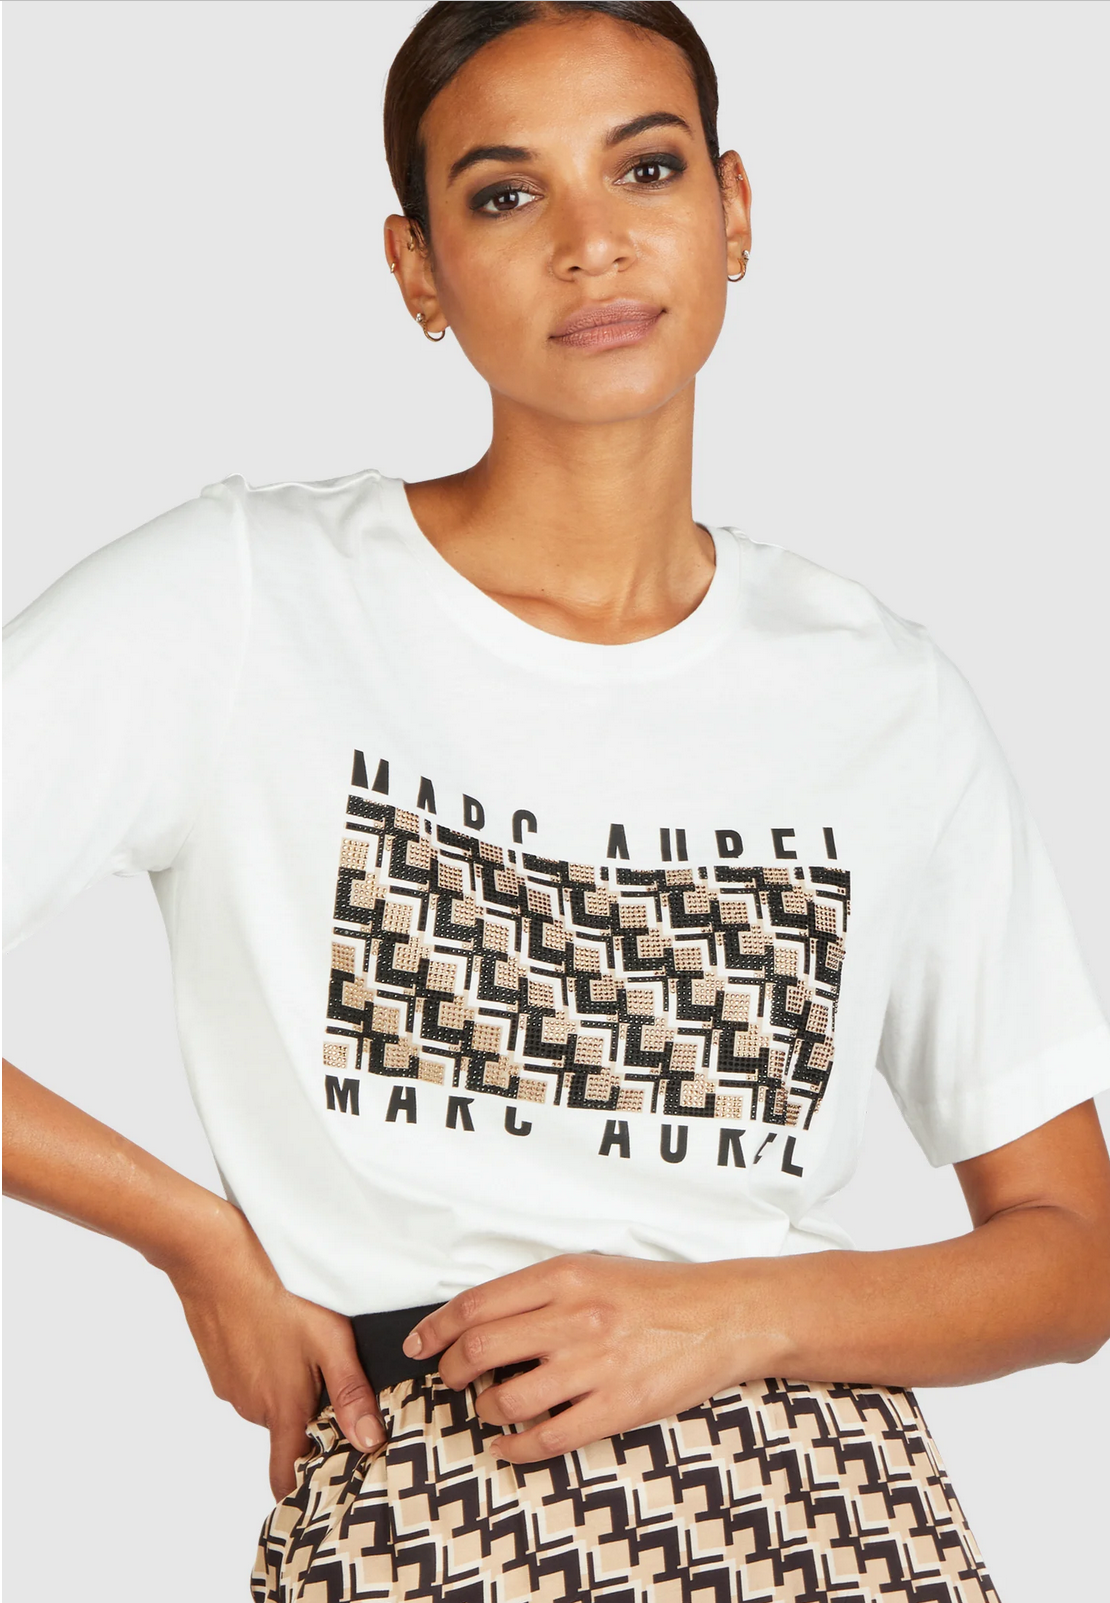 T-Shirt mit Strass-Print